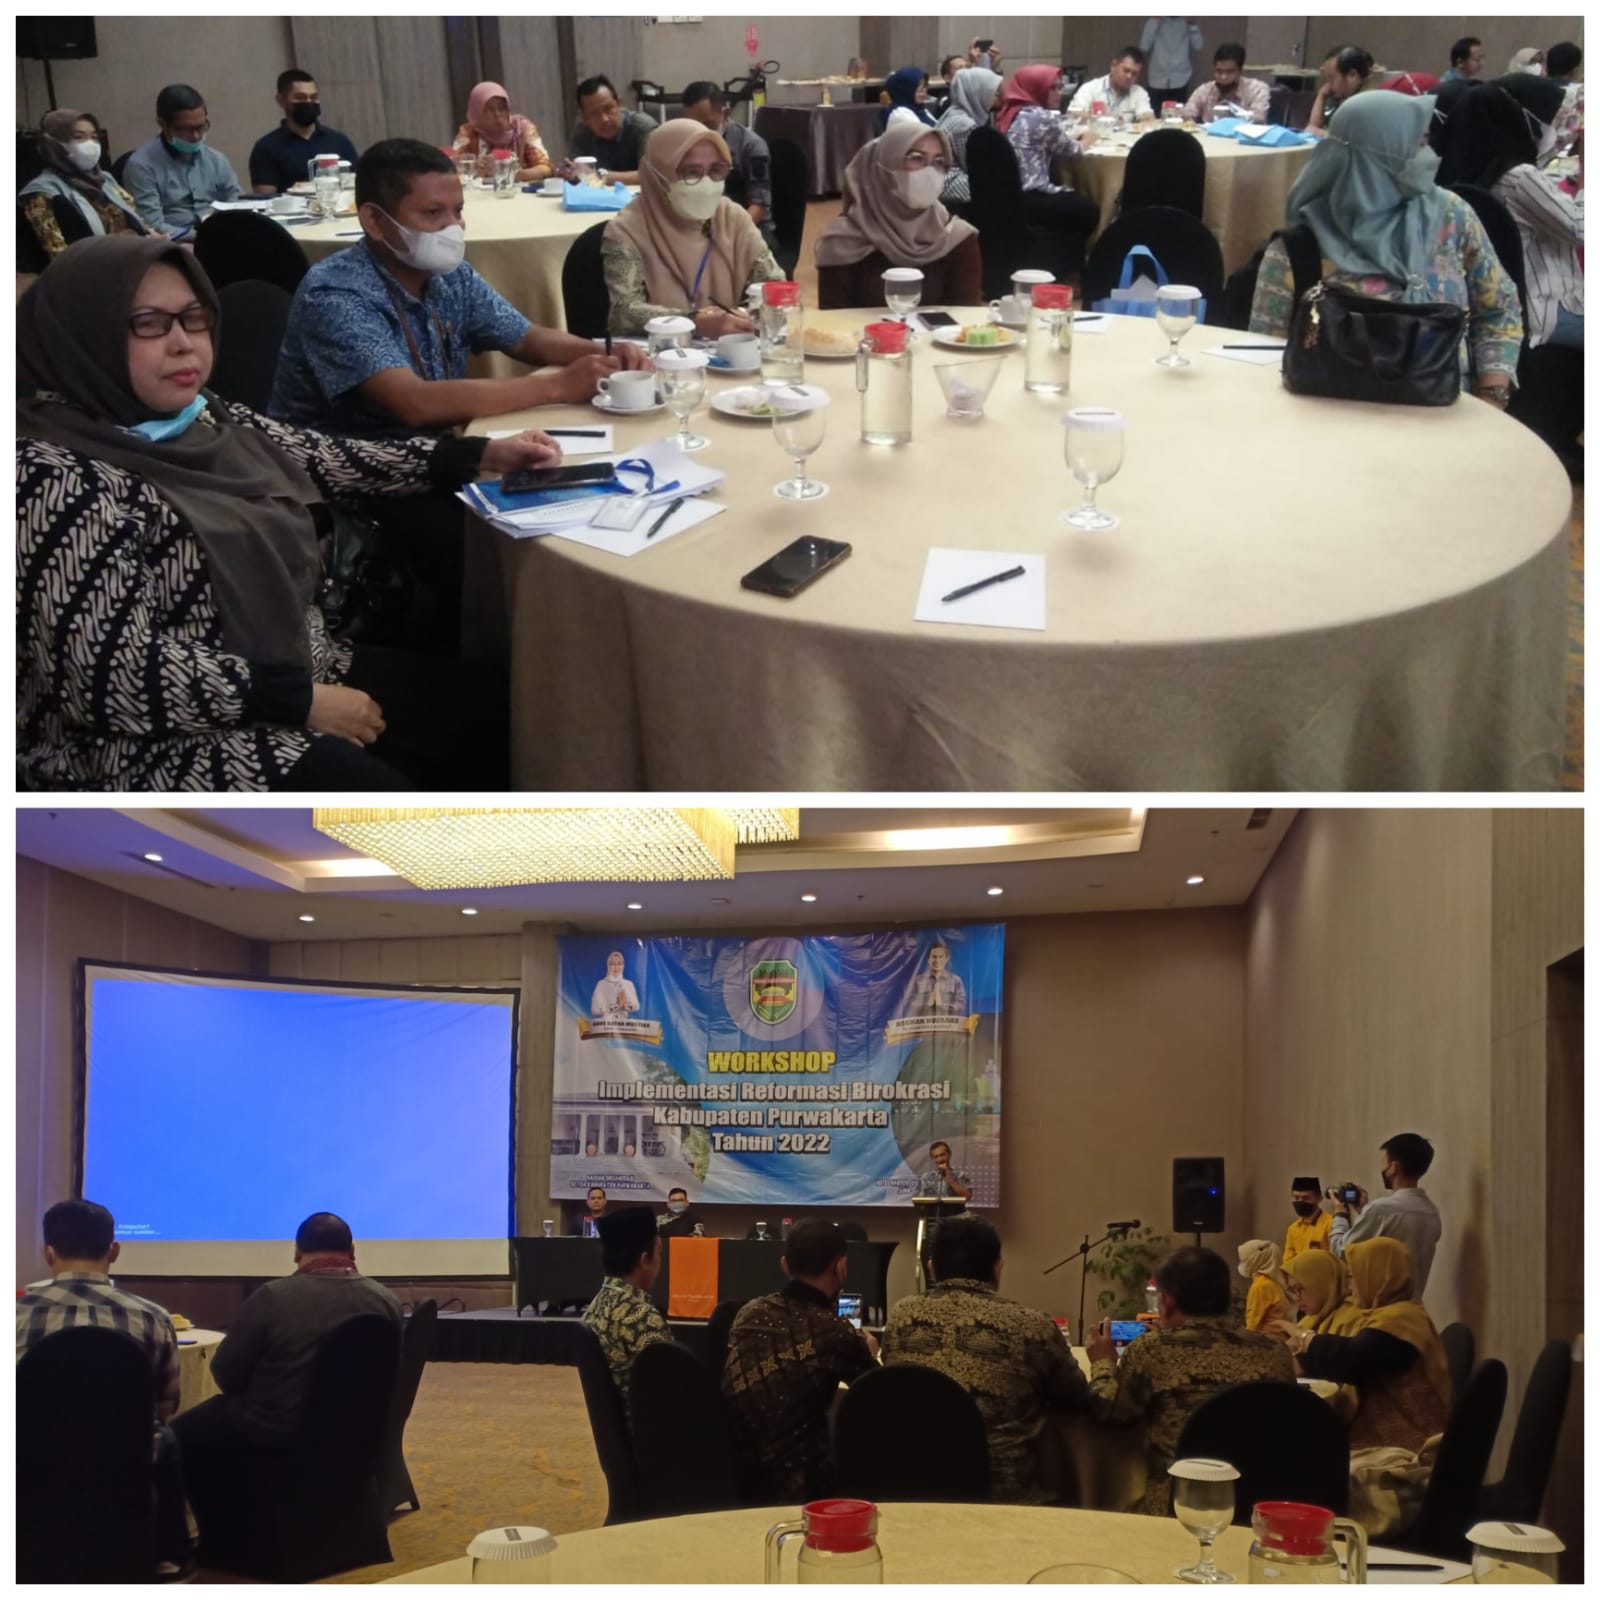 Jumat (10/06/2022) Workshop Implementasi Reformasi Birokrasi Kabupaten Purwakarta bertempat di Hotel Harper Purwakarta